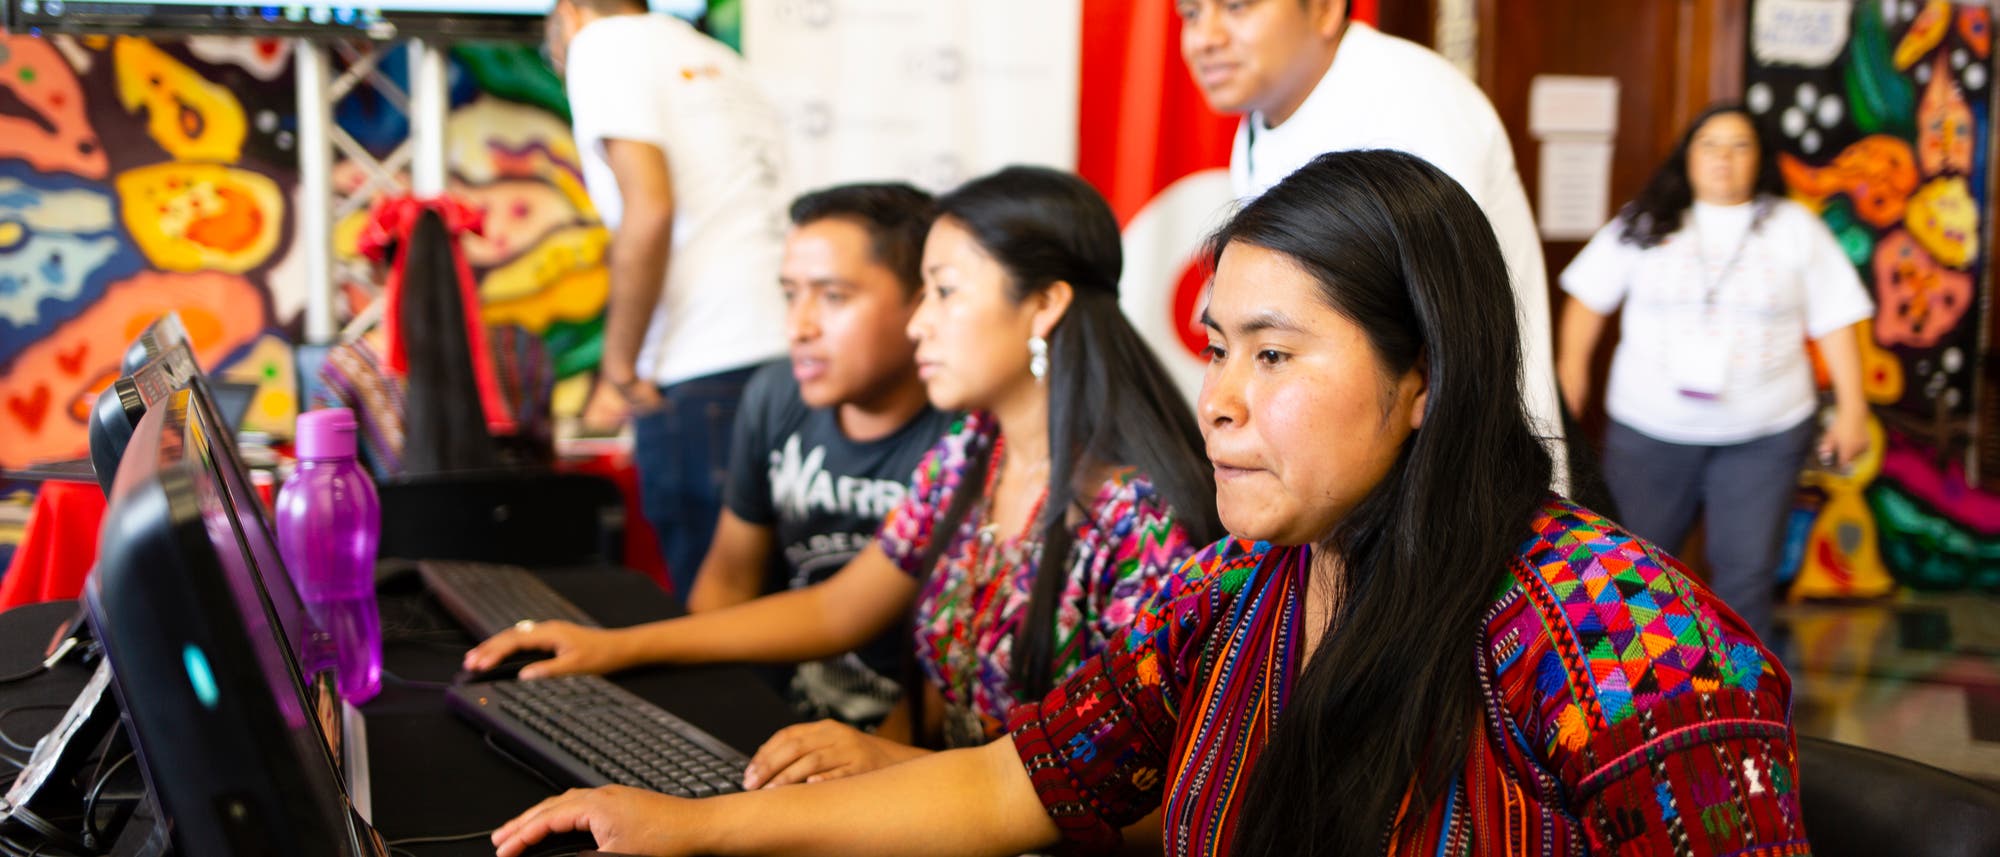 Digitalaktivisten verfassen Wikipedia-Artikel auf Kaqchikel, einer guatemaltekischen Mayasprache